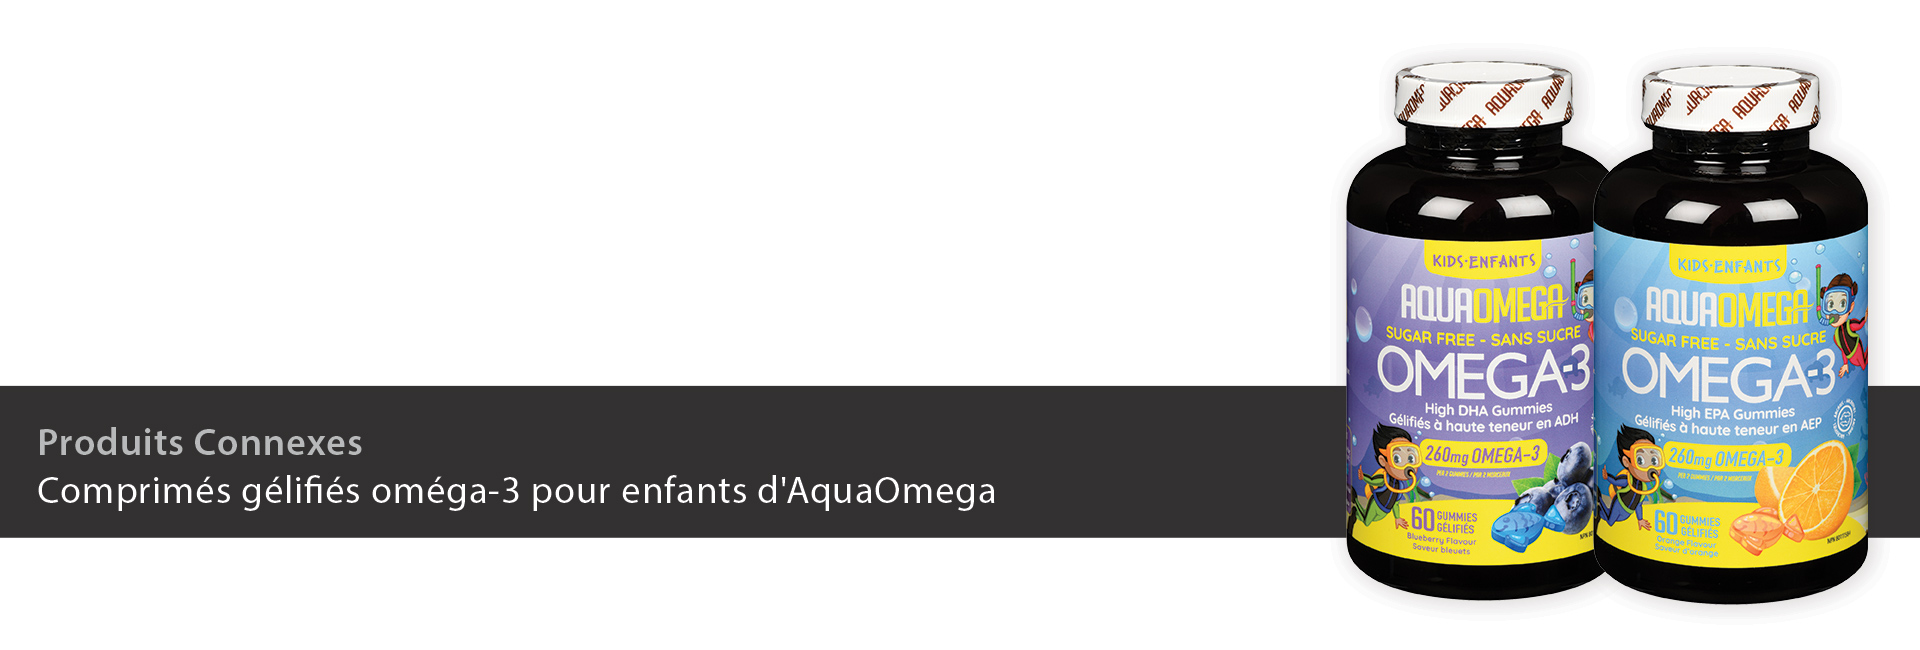 Comprimés gélifiés oméga-3 pour enfants d'aquaOmega